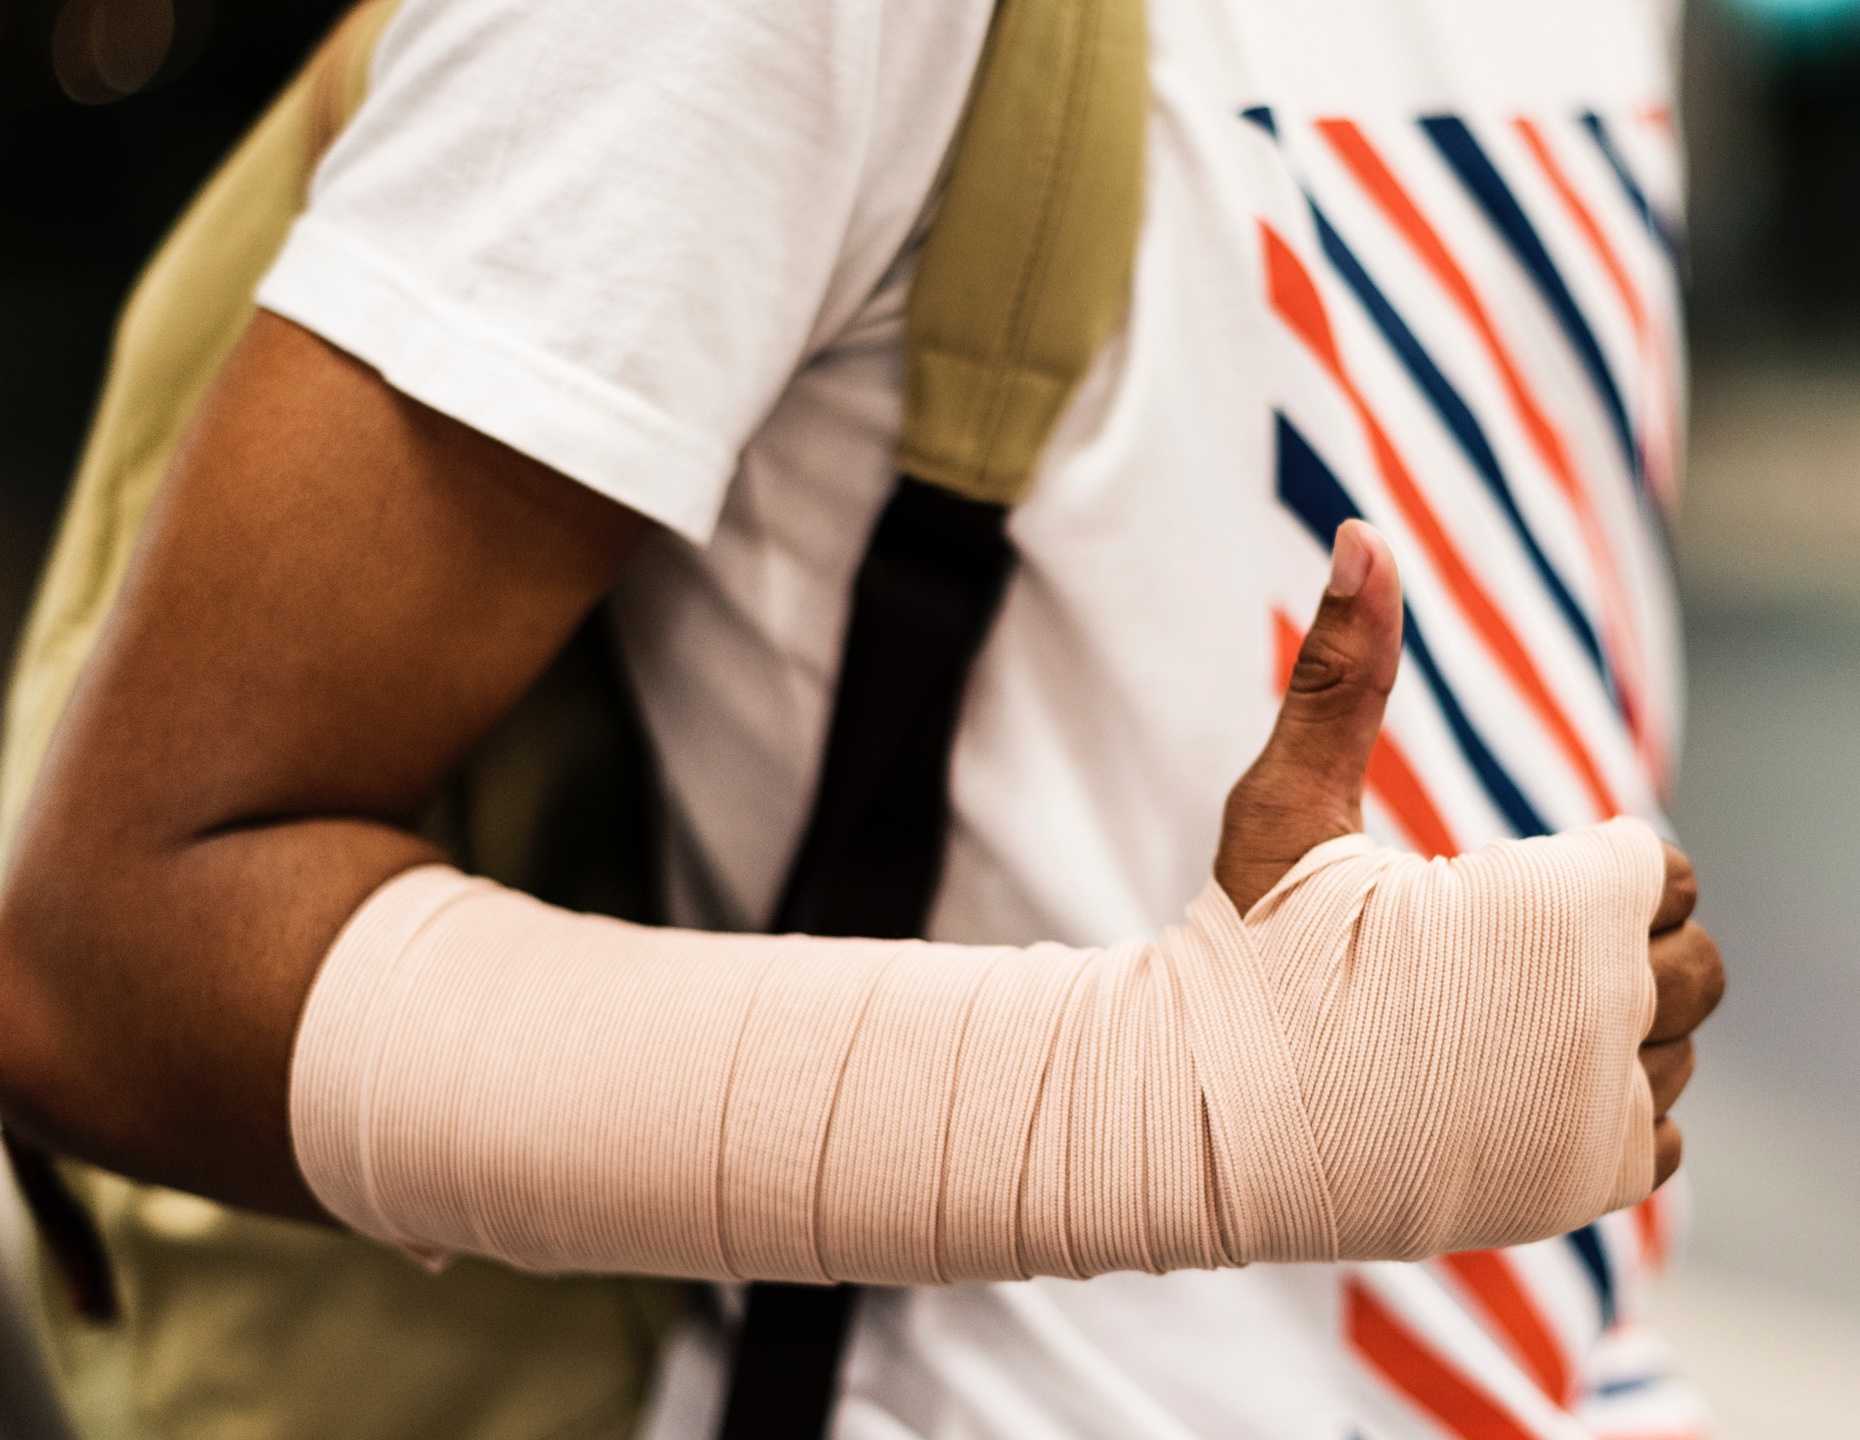 Nærbillede af skadet arm til mobilapp til rapportering af hændelser